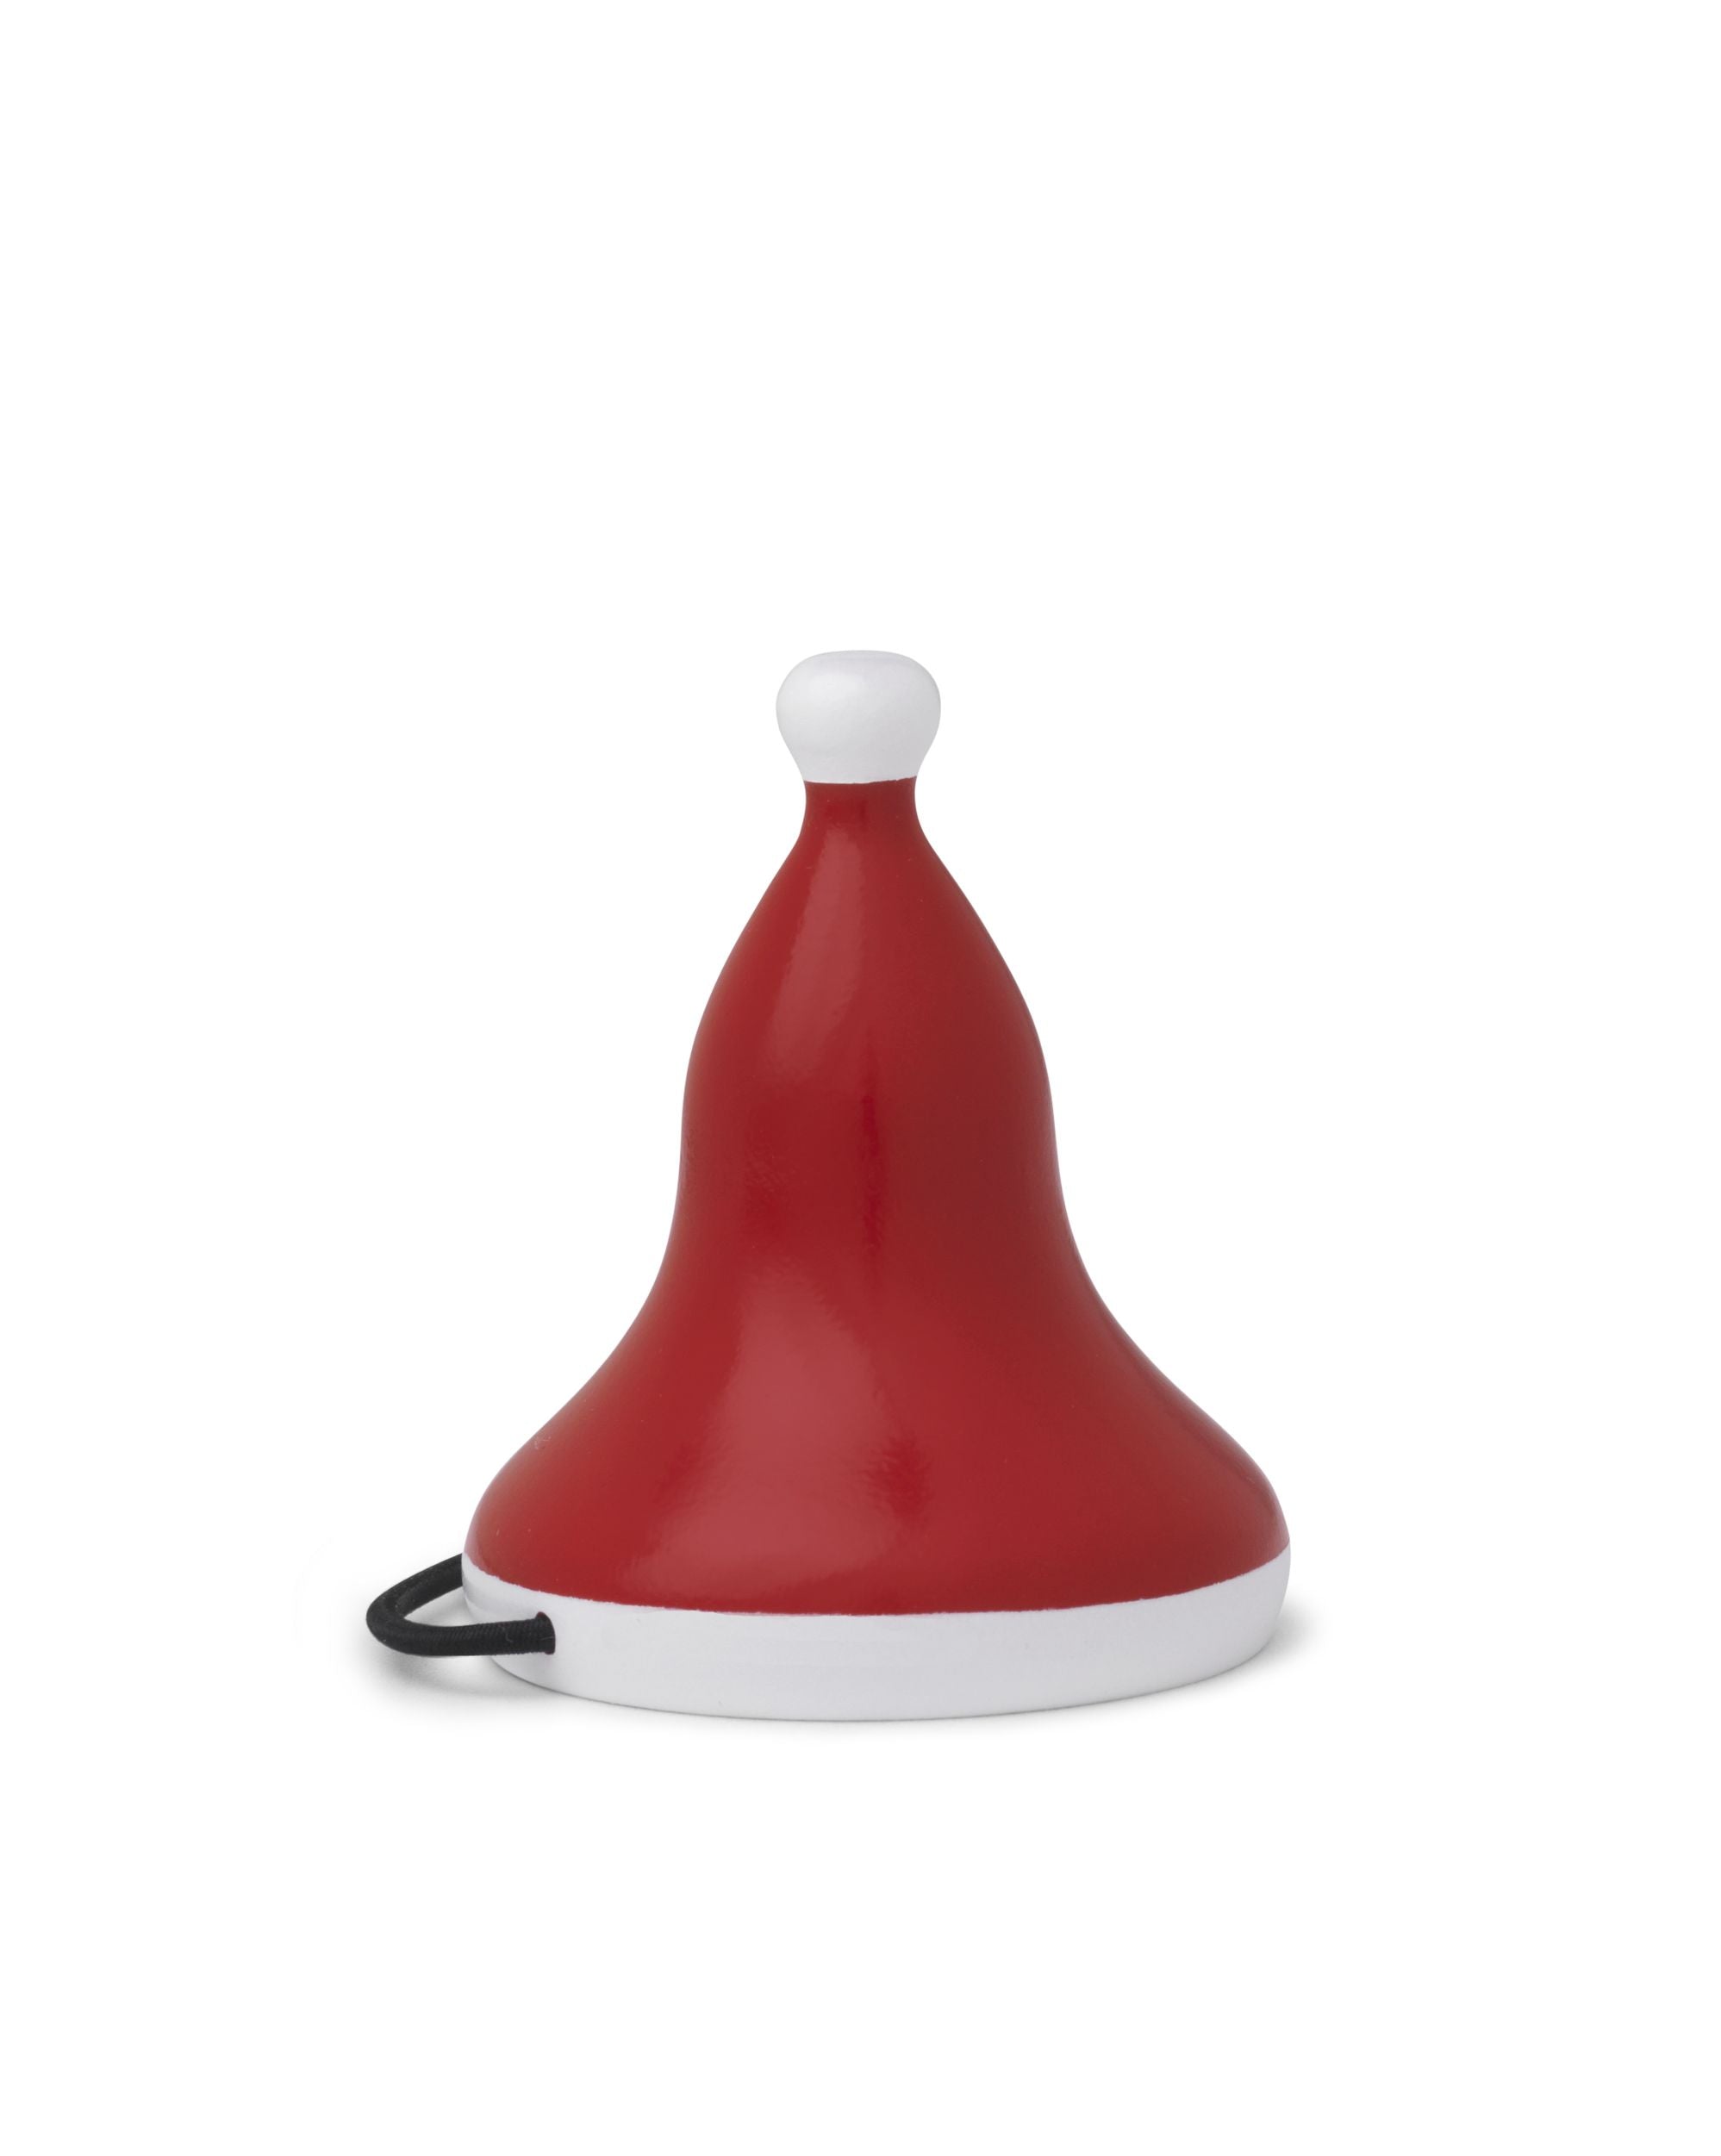 Kay Bojesen Santa's Mütze klein Ø5 cm rot/weiß